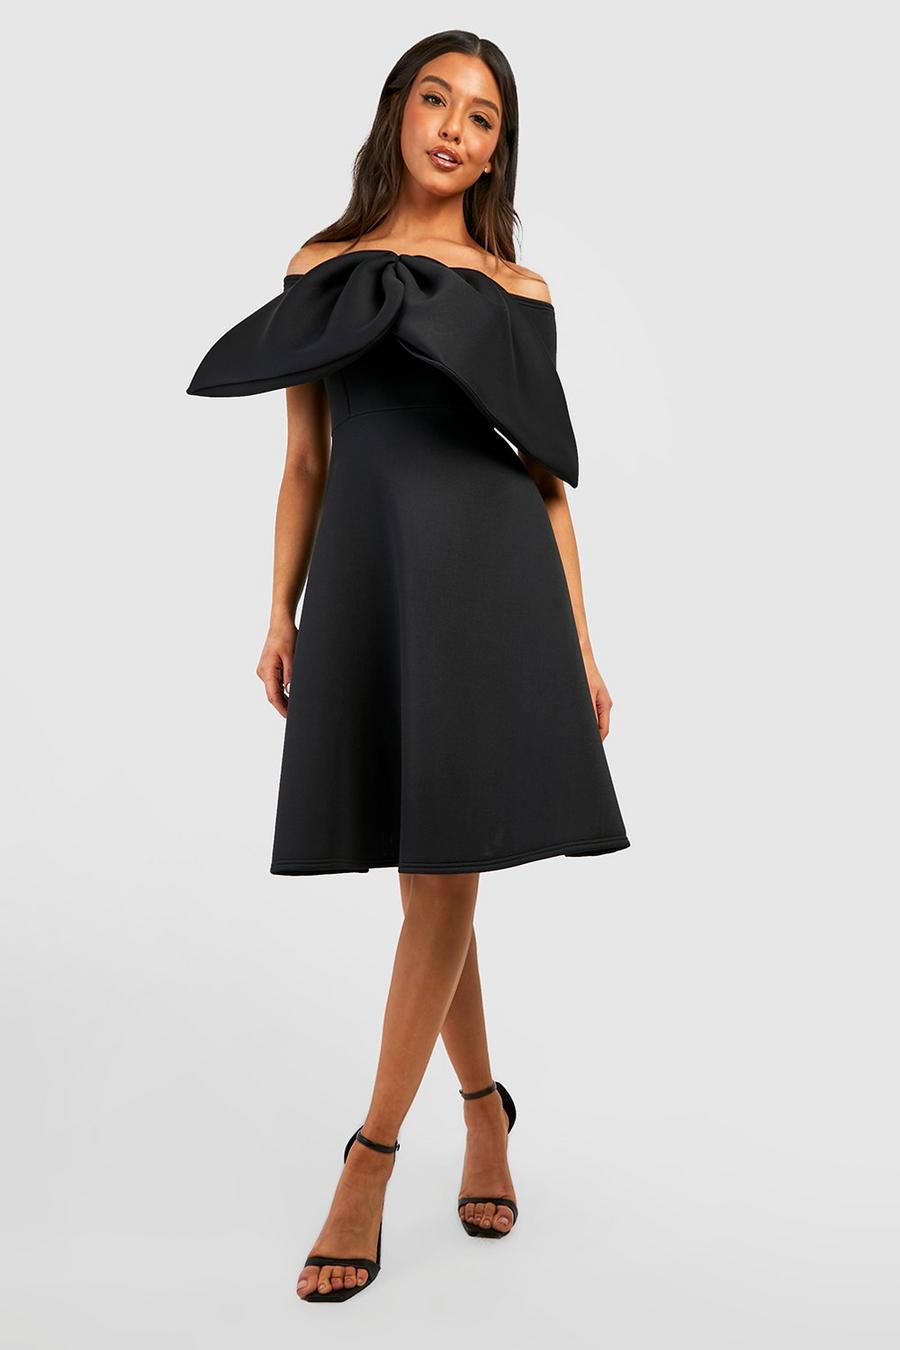 שחור negro שמלת סקייטר מידי מבד סקובה עם סרט בחזית וללא תפרים